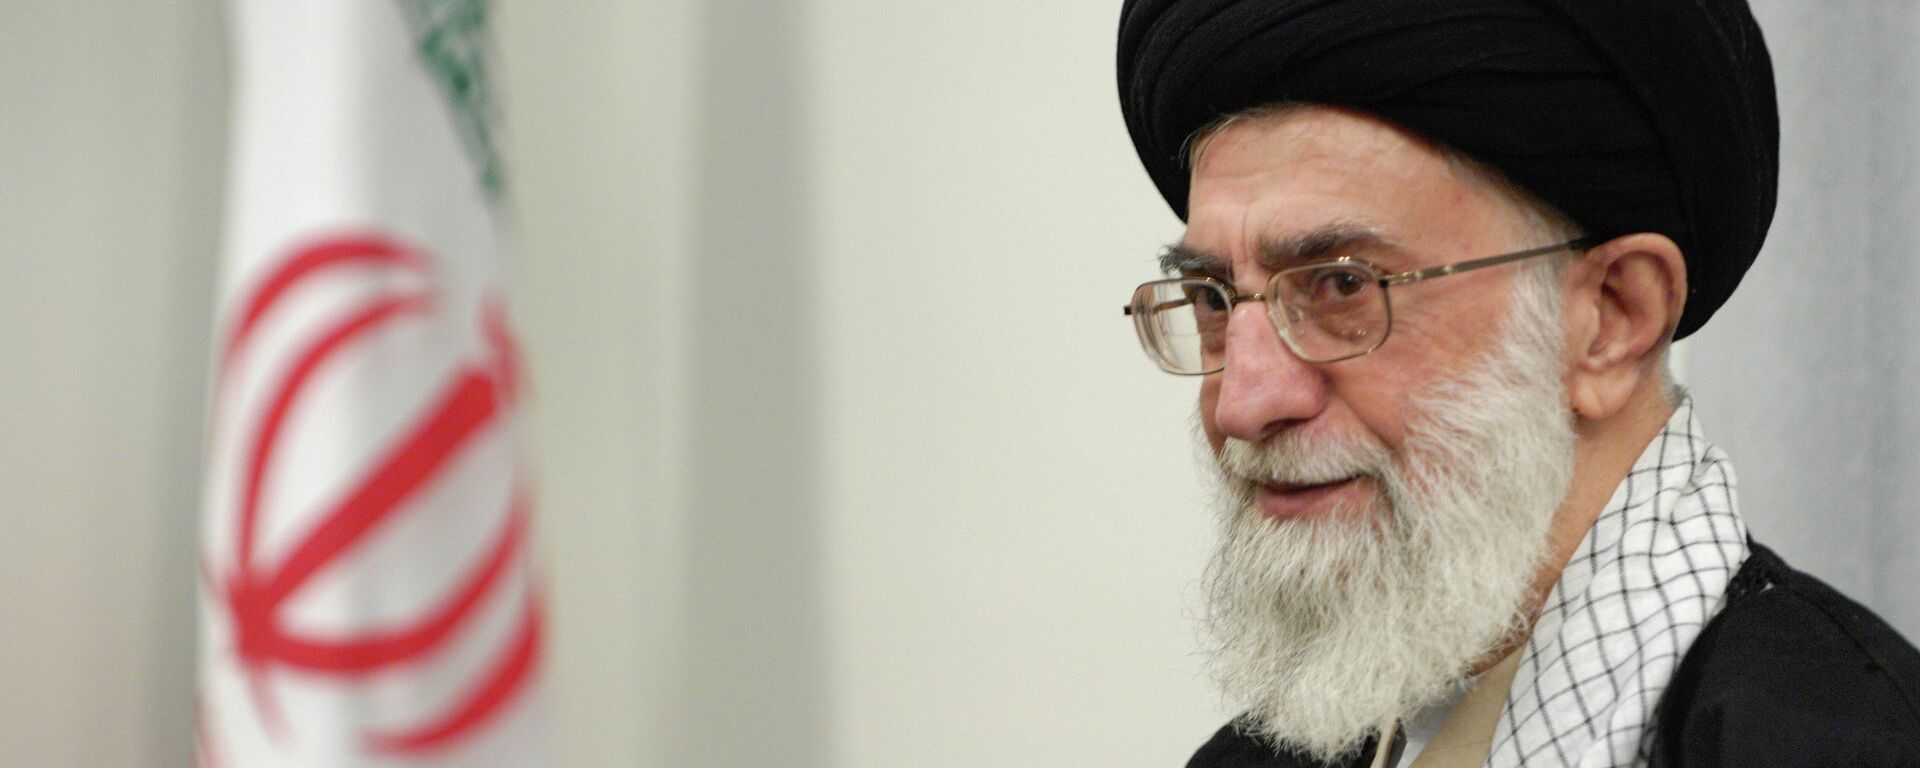 Духовный лидер Ирана аятолла Сейед Али Хаменеи. Архивное фото. - Sputnik Тоҷикистон, 1920, 01.03.2022